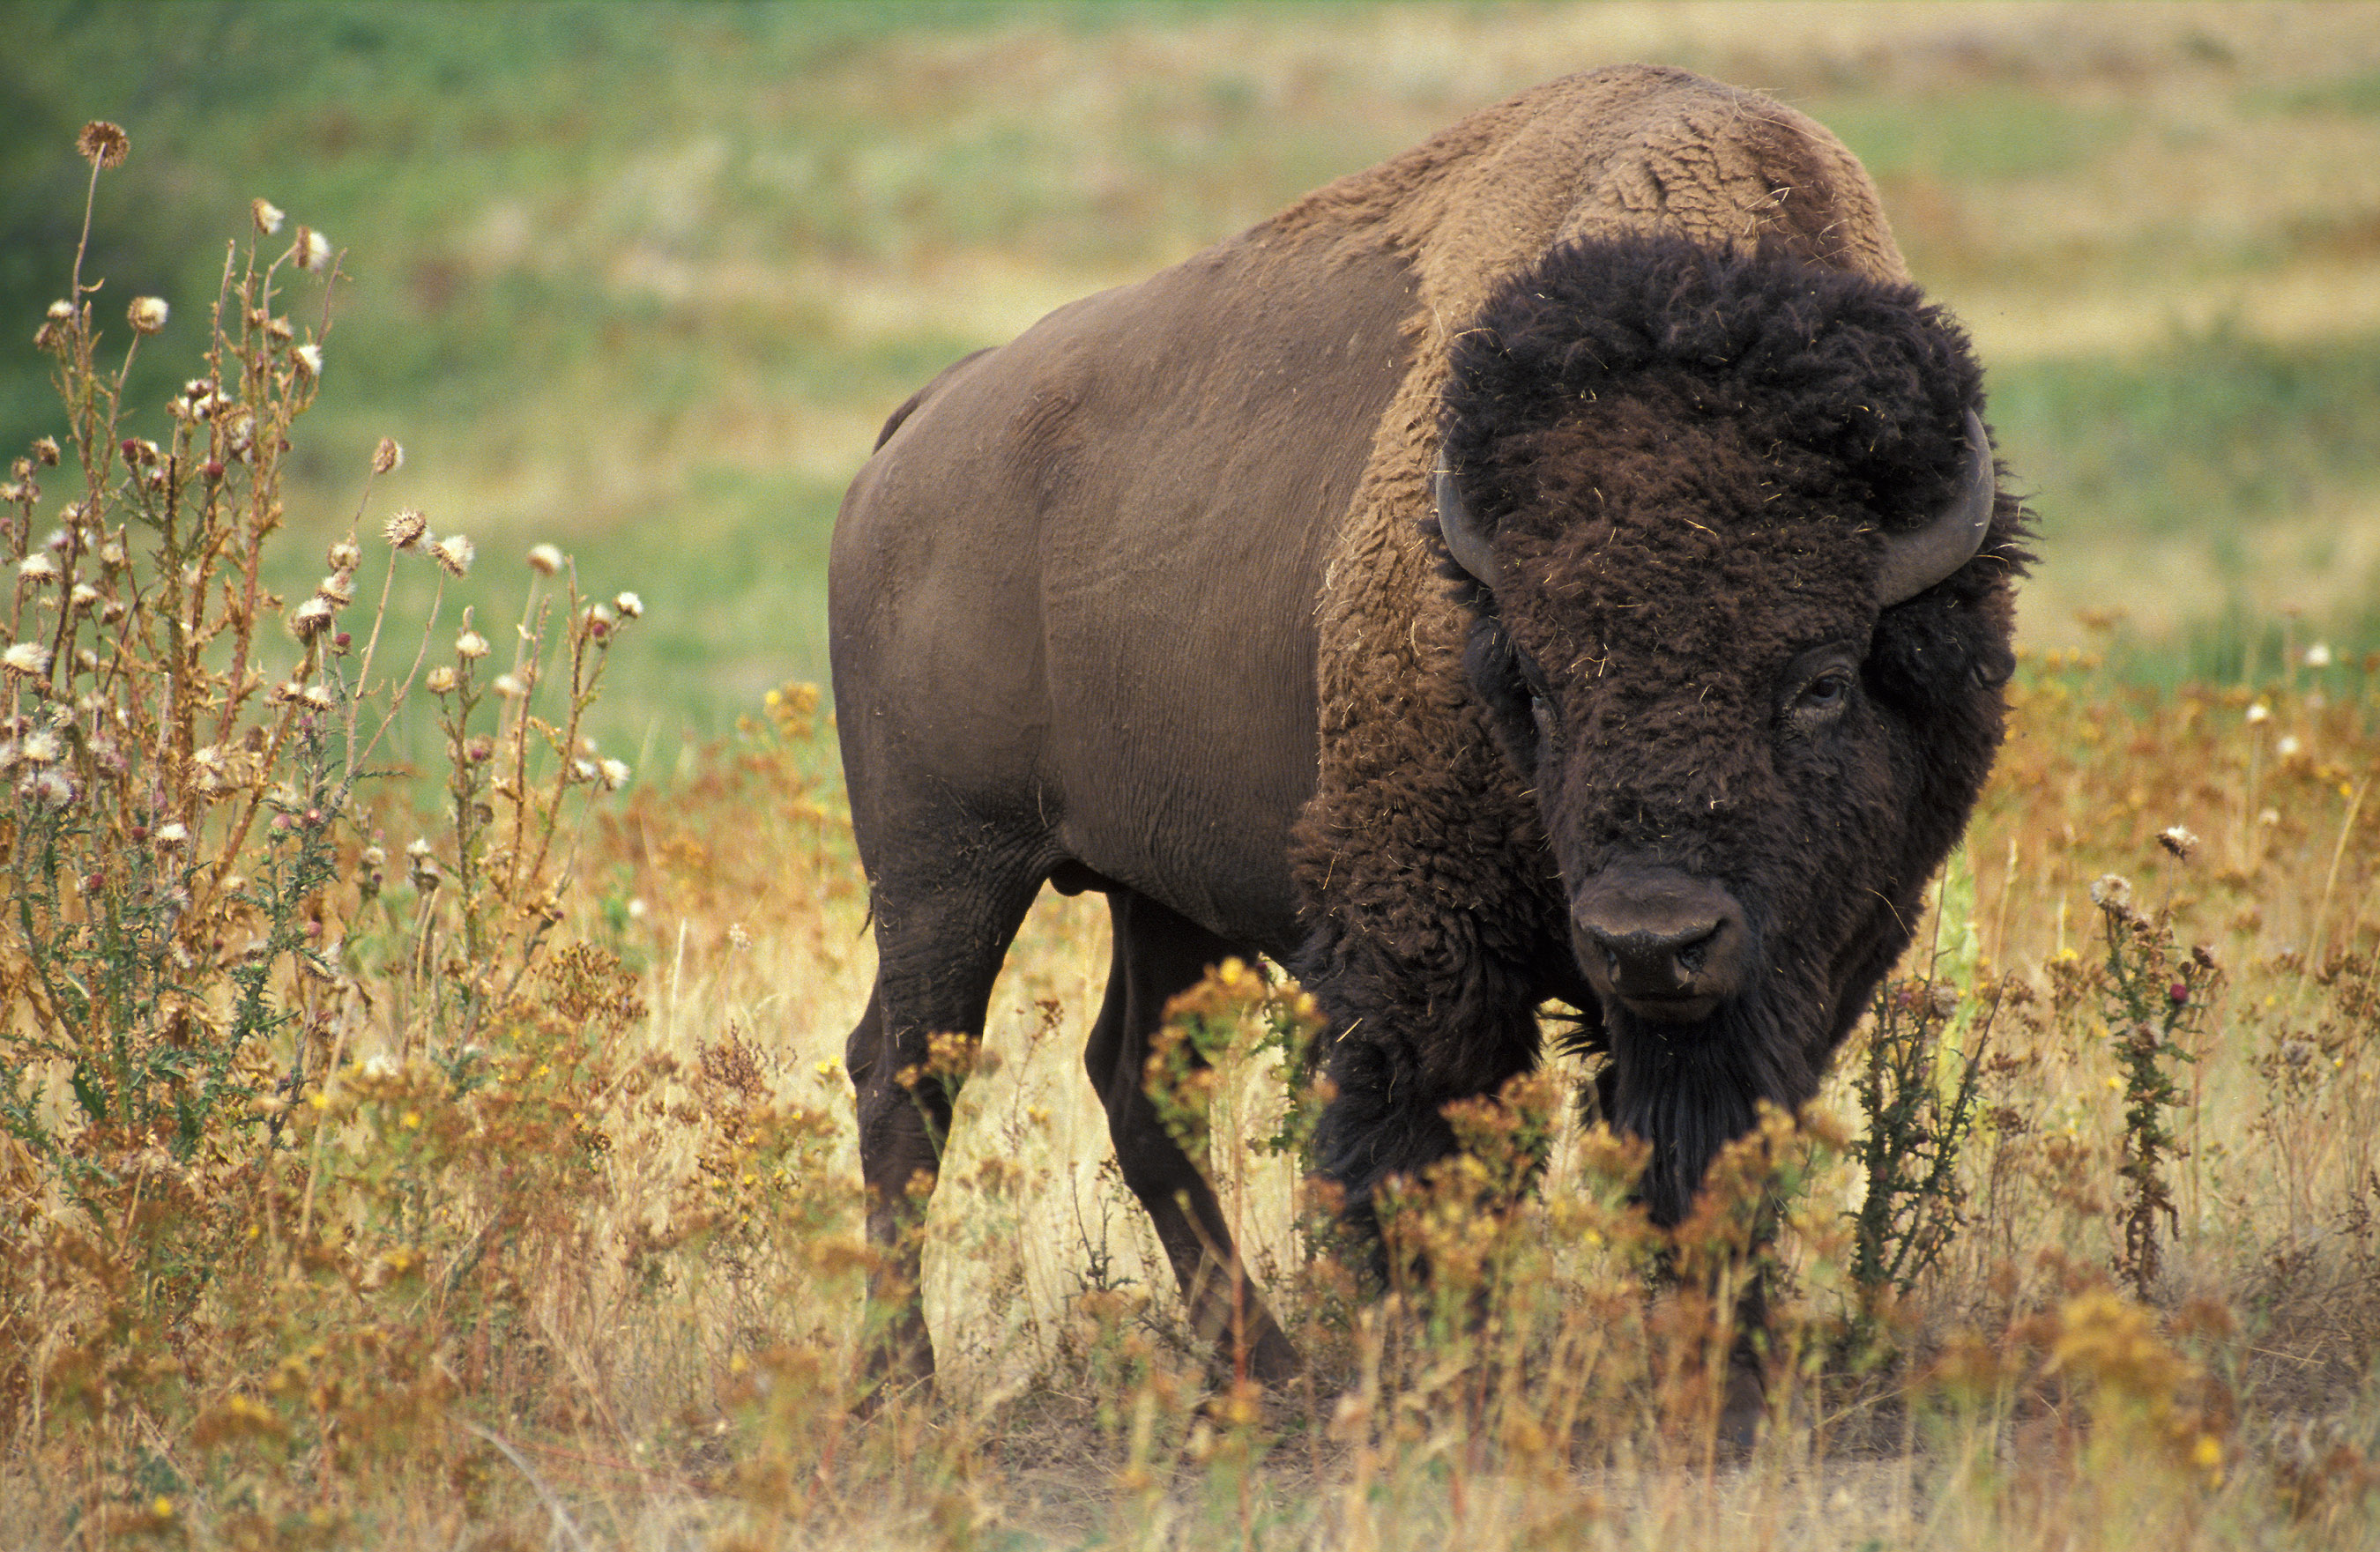 Wild bison photo